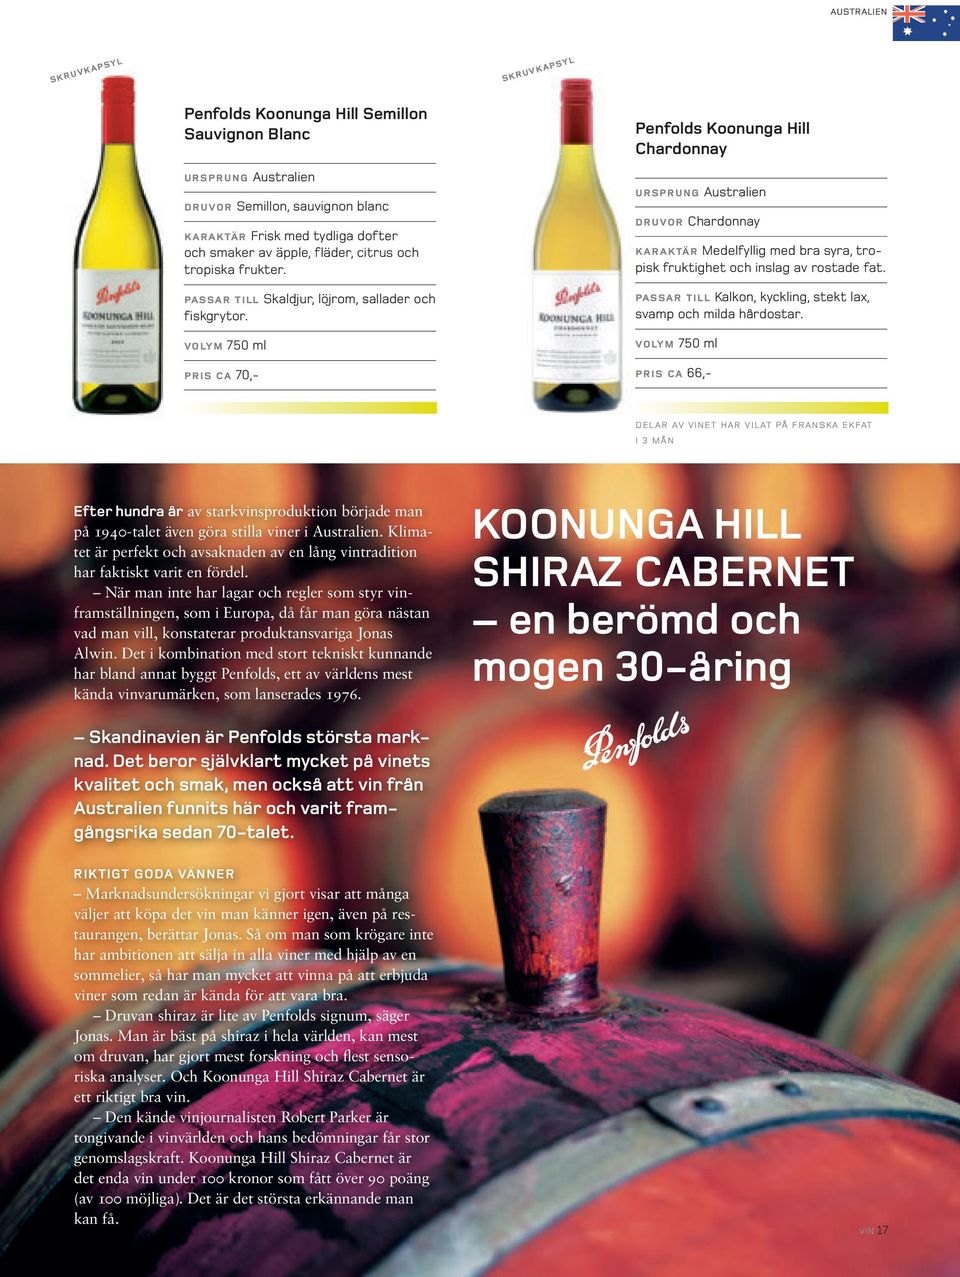 pris ca 70,- Penfolds Koonunga Hill Chardonnay ursprung druvor Chardonnay karaktär Medelfyllig med bra syra, tropisk fruktighet och inslag av rostade fat.